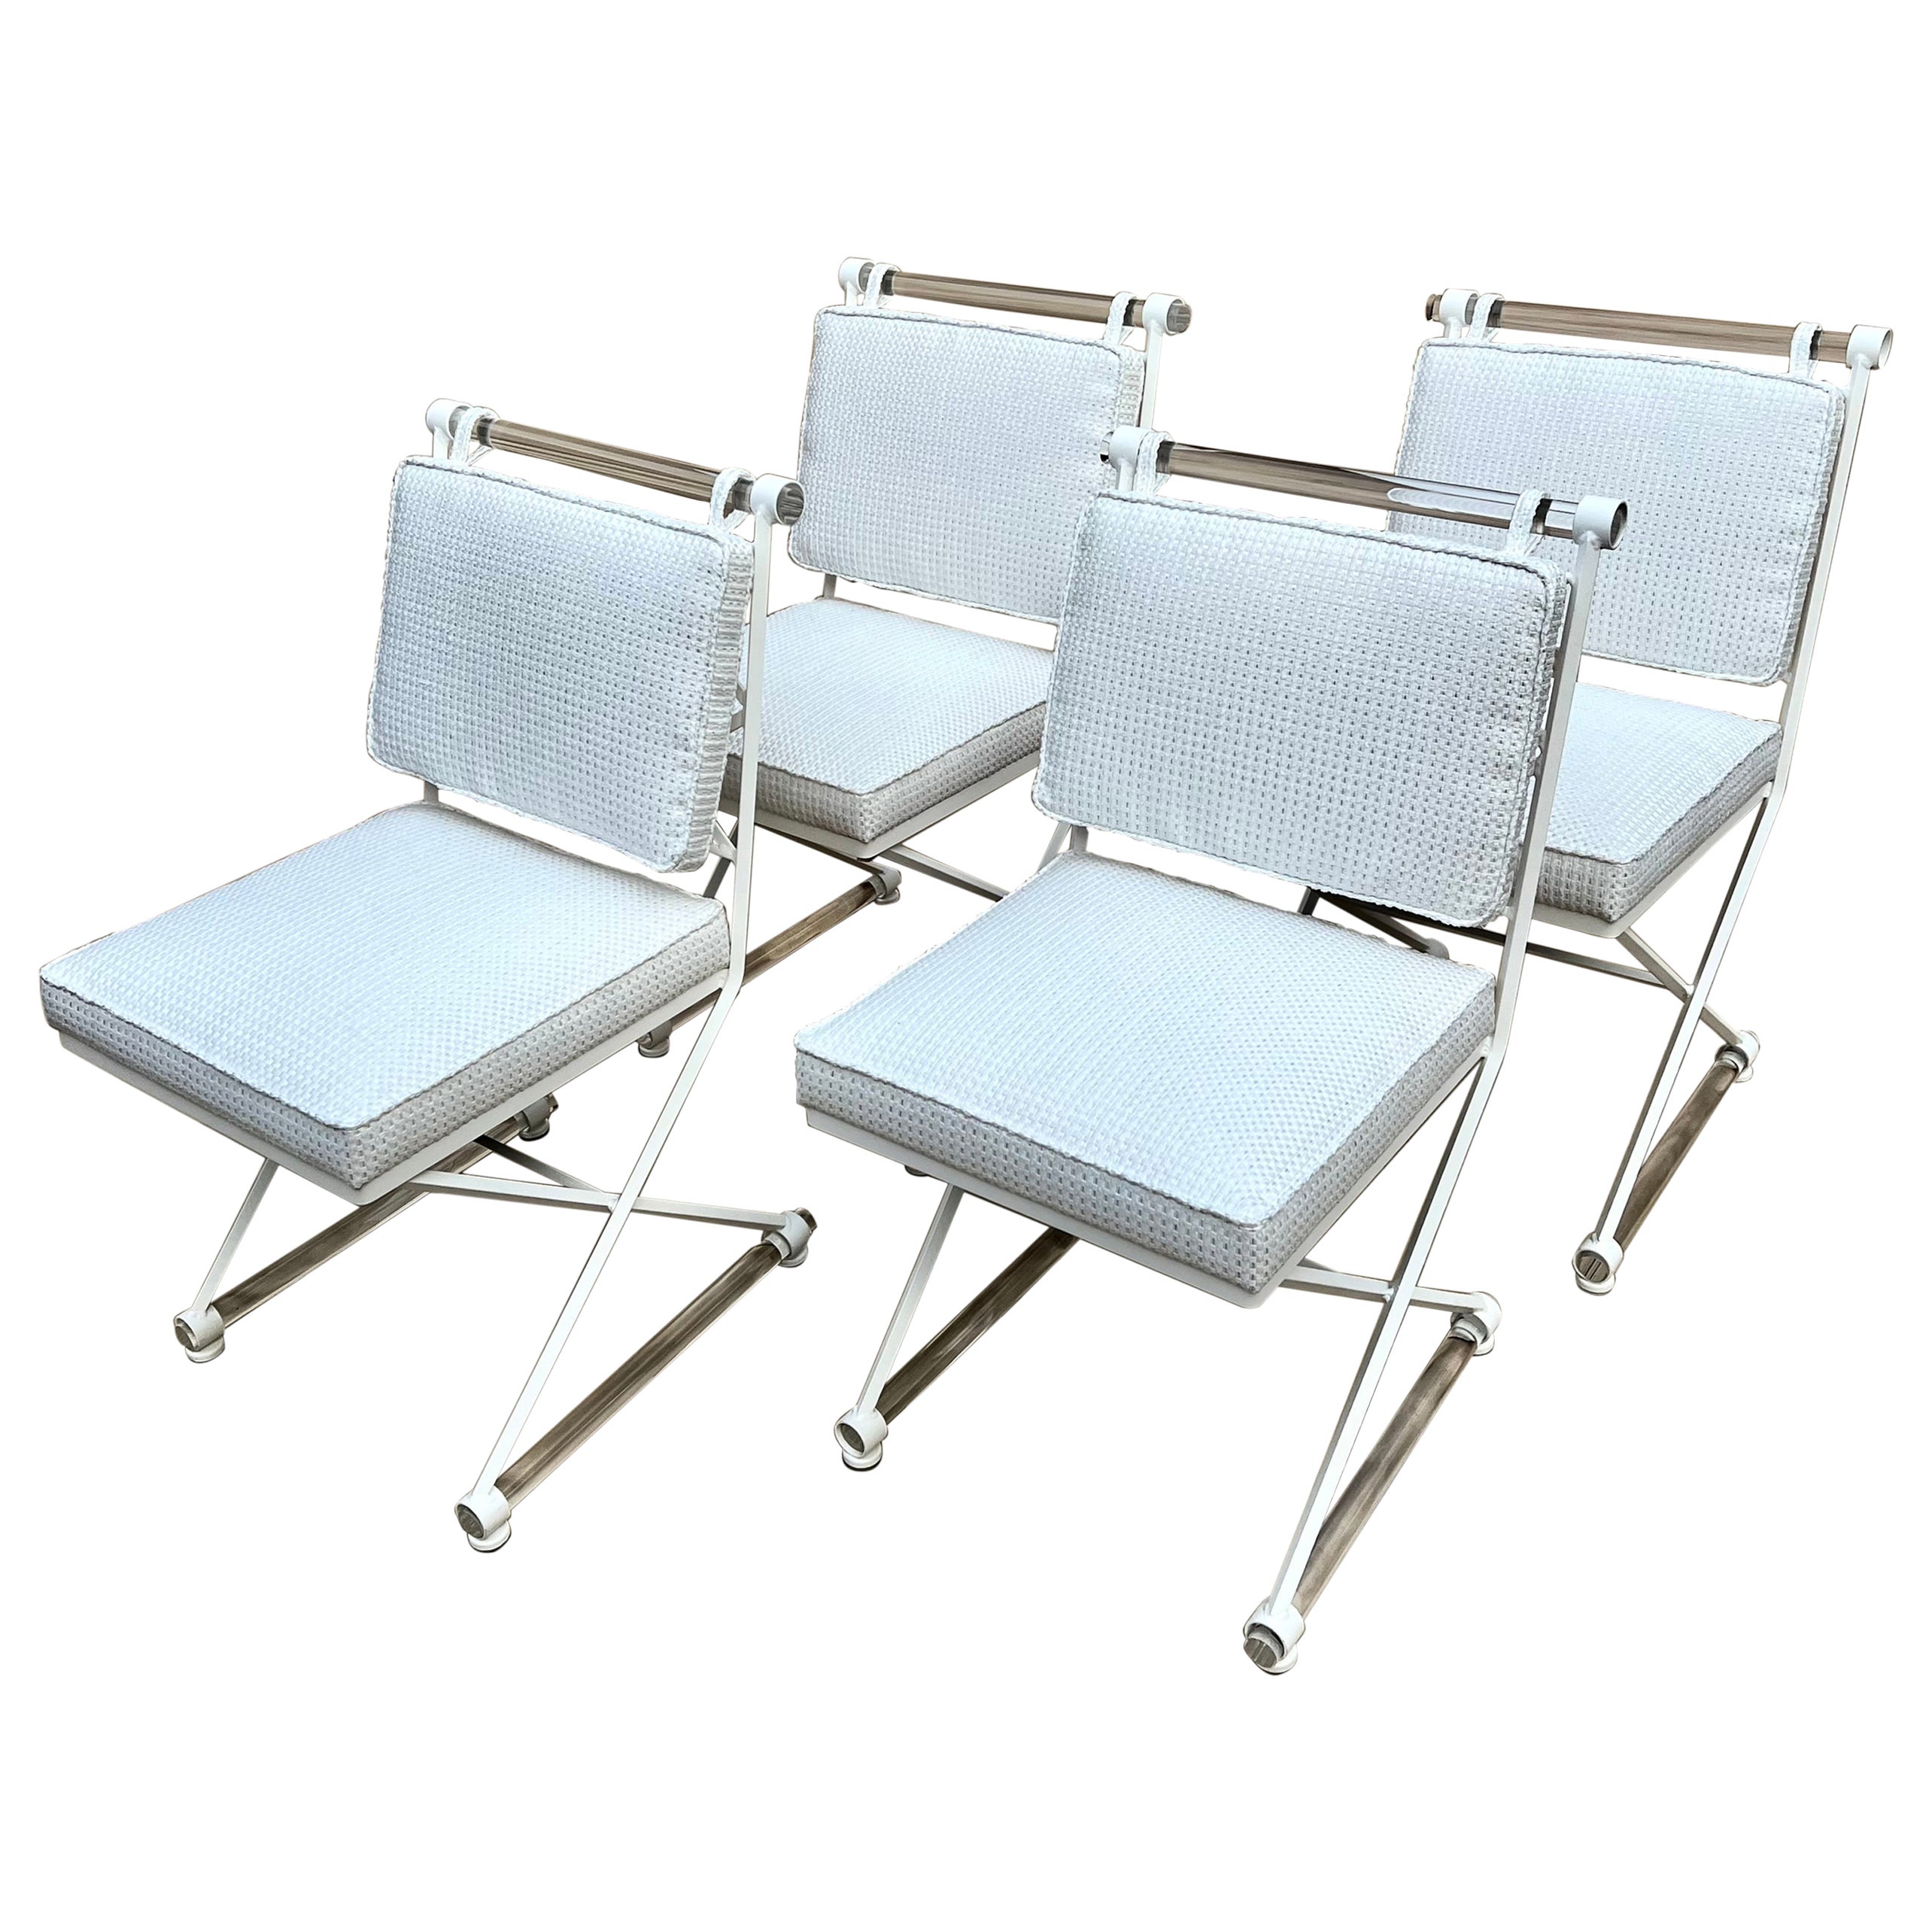 X-förmige Stühle von Cleo Baldon, restauriert mit Acryl Dowels und Sonnenschirmpolsterung